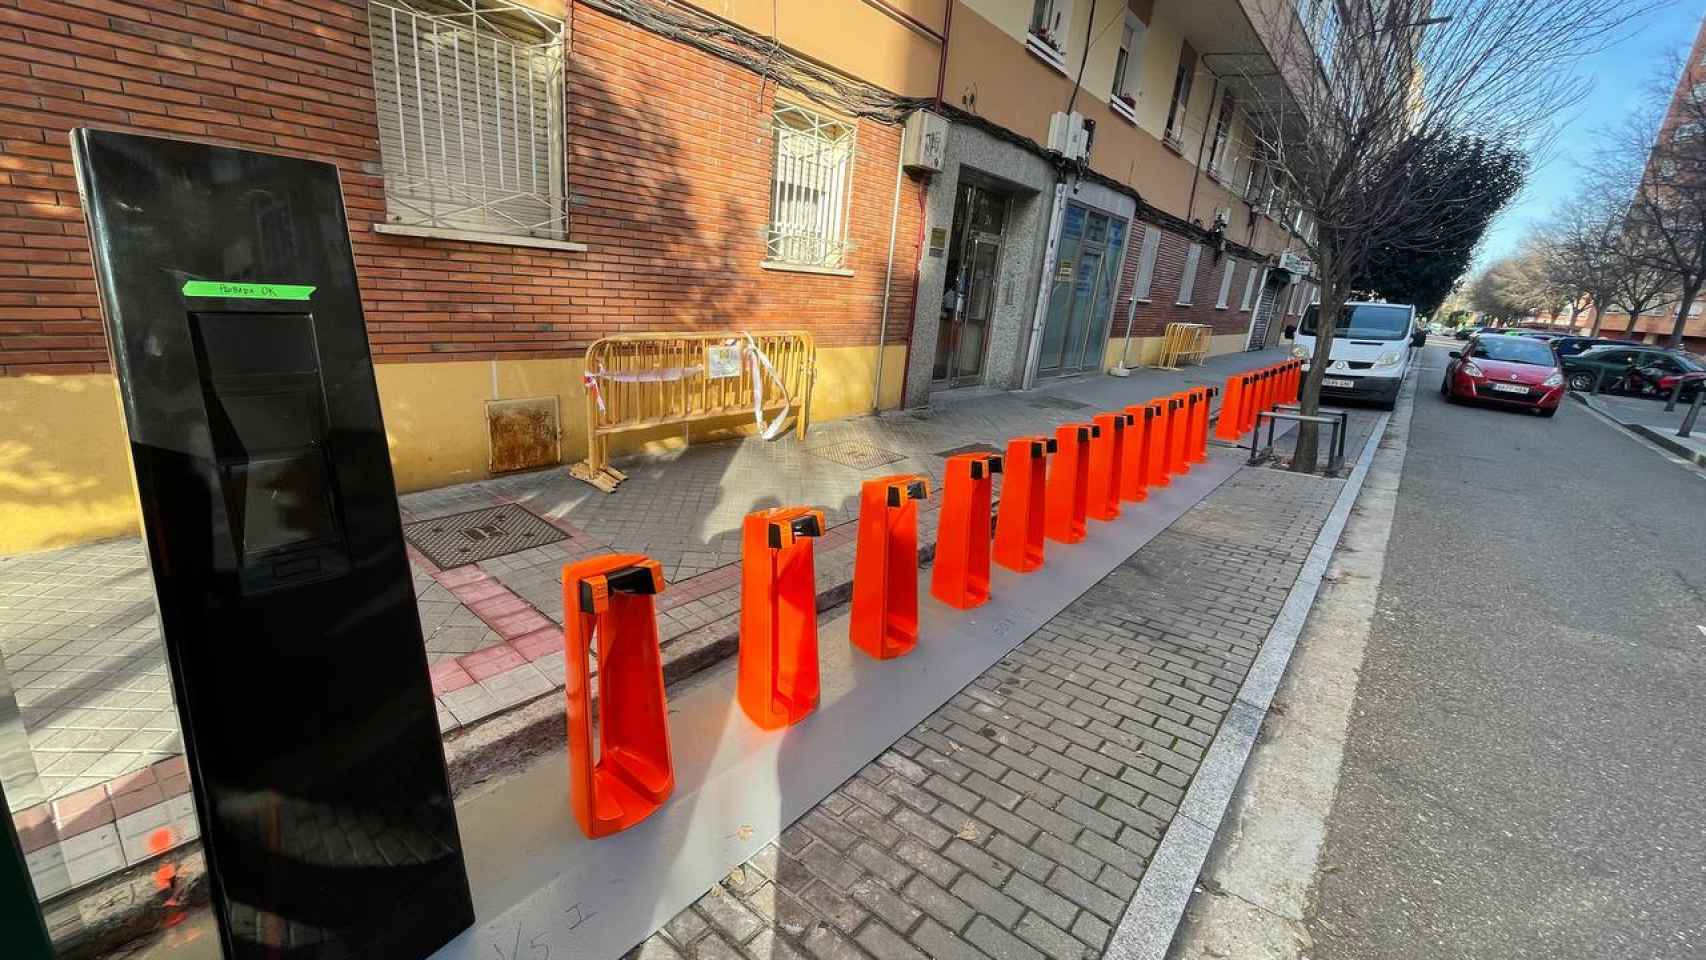 Uno de los aparcamientos 'Biki' en Valladolid